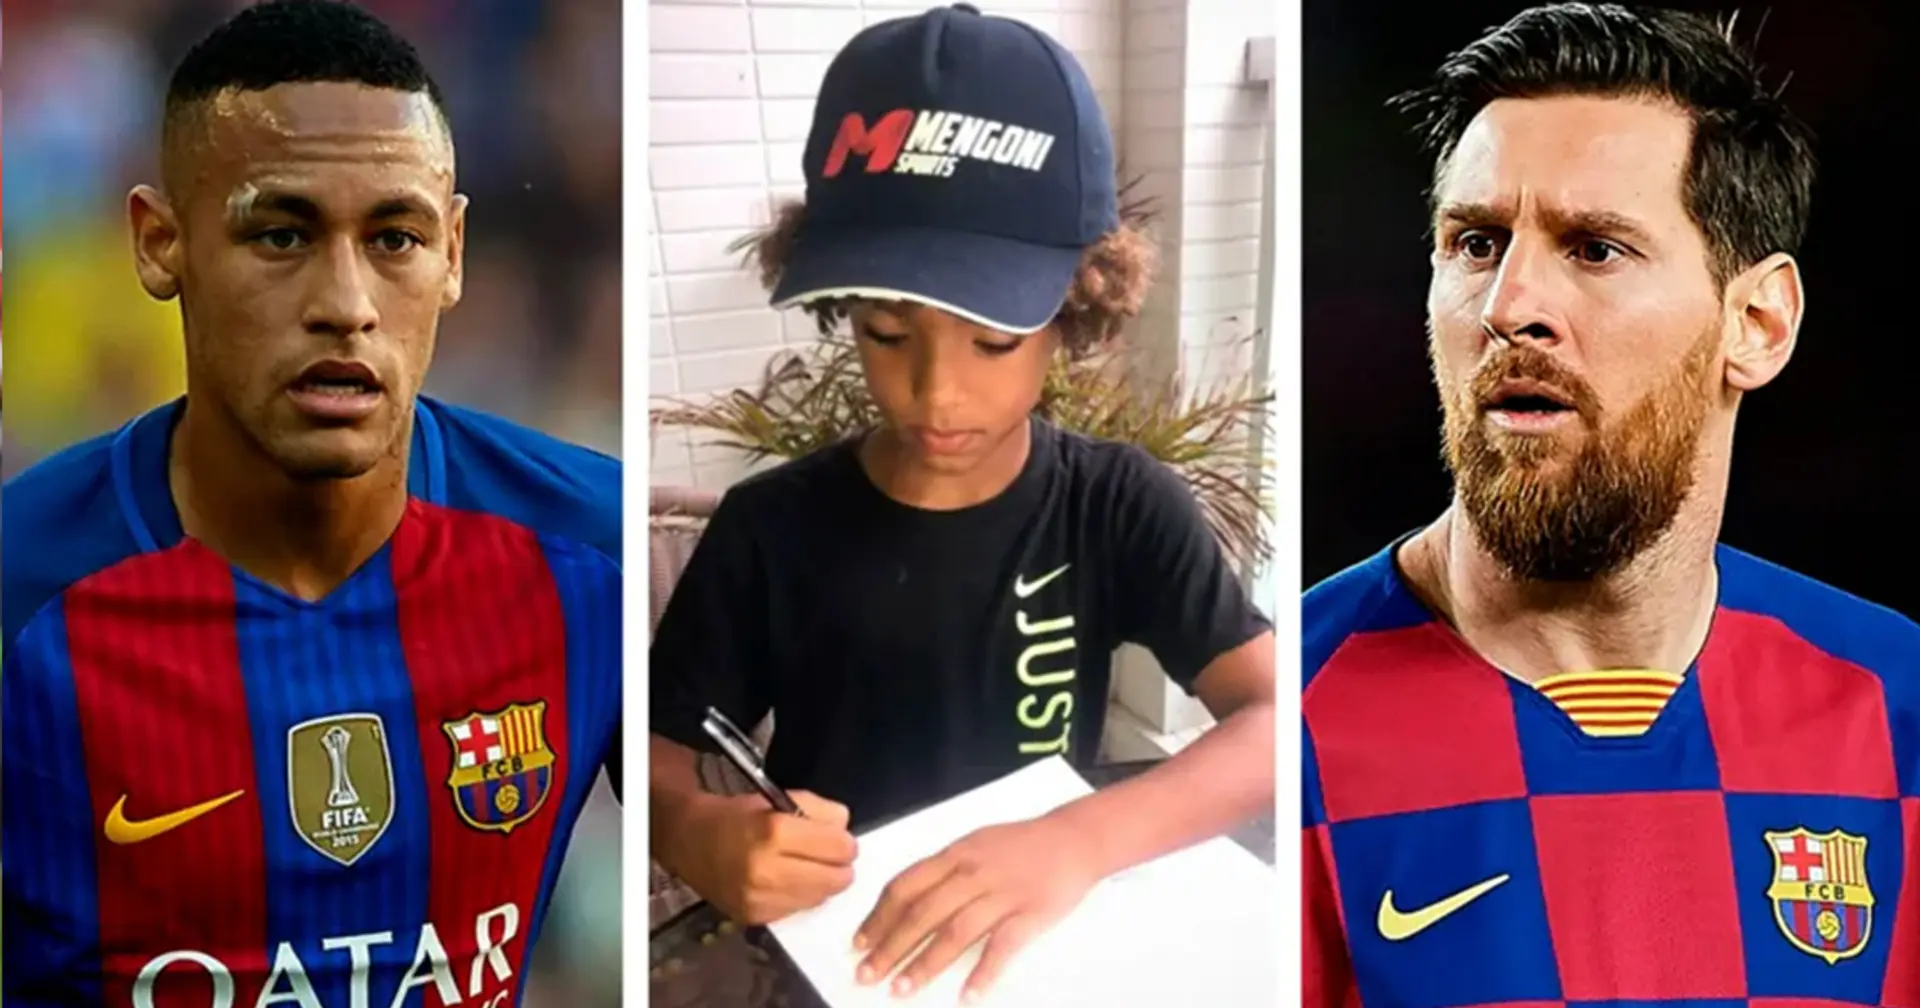 El niño de 8 años que rompe el récord de Messi y Neymar para convertirse en el atleta más joven en firmar contrato con Nike